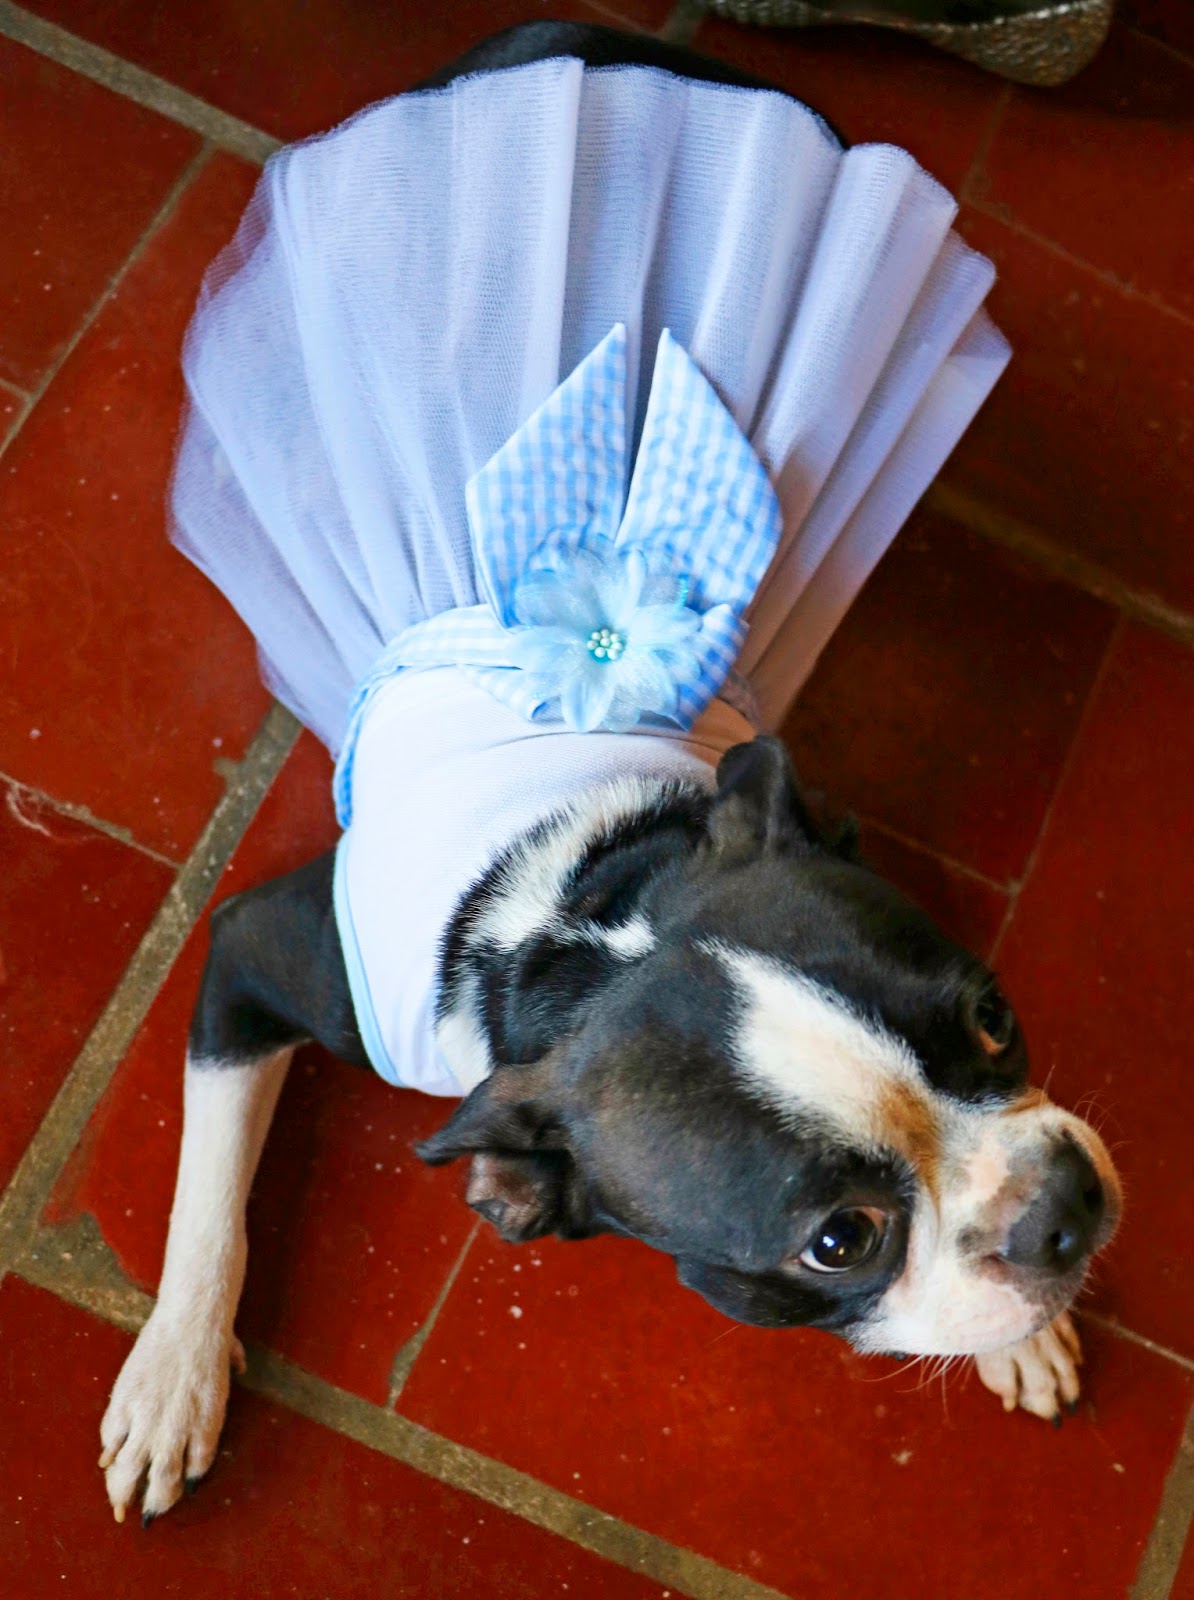 Super cute Boston Terrier in a dress!